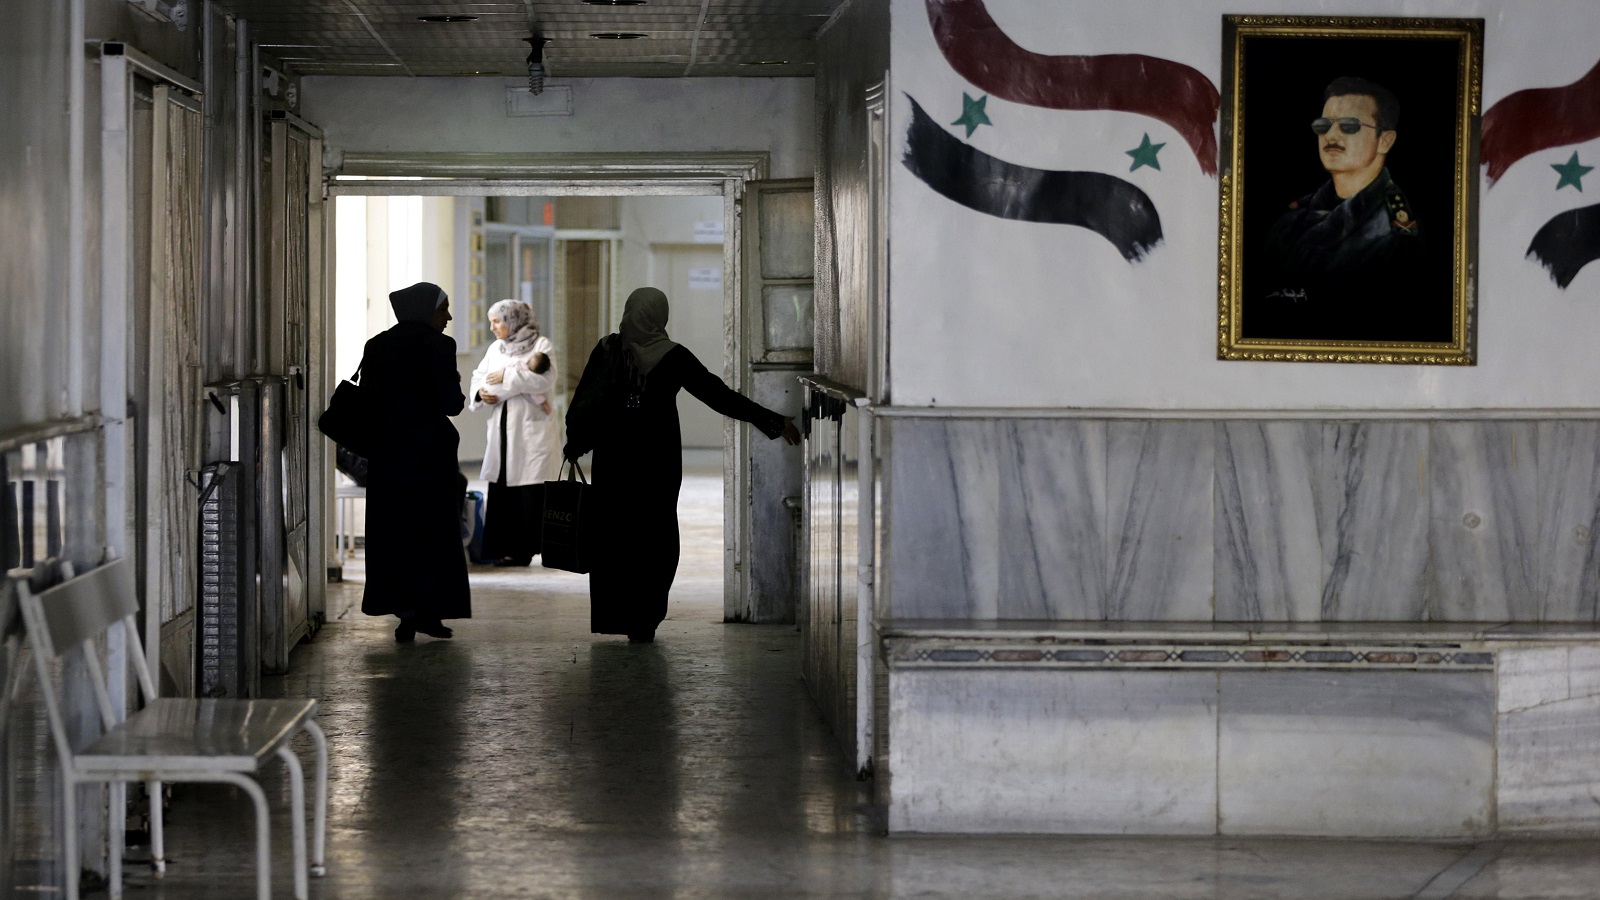 حين قال مدير مشفى الأسد لمريضة كورونا:"خلوها تموت"